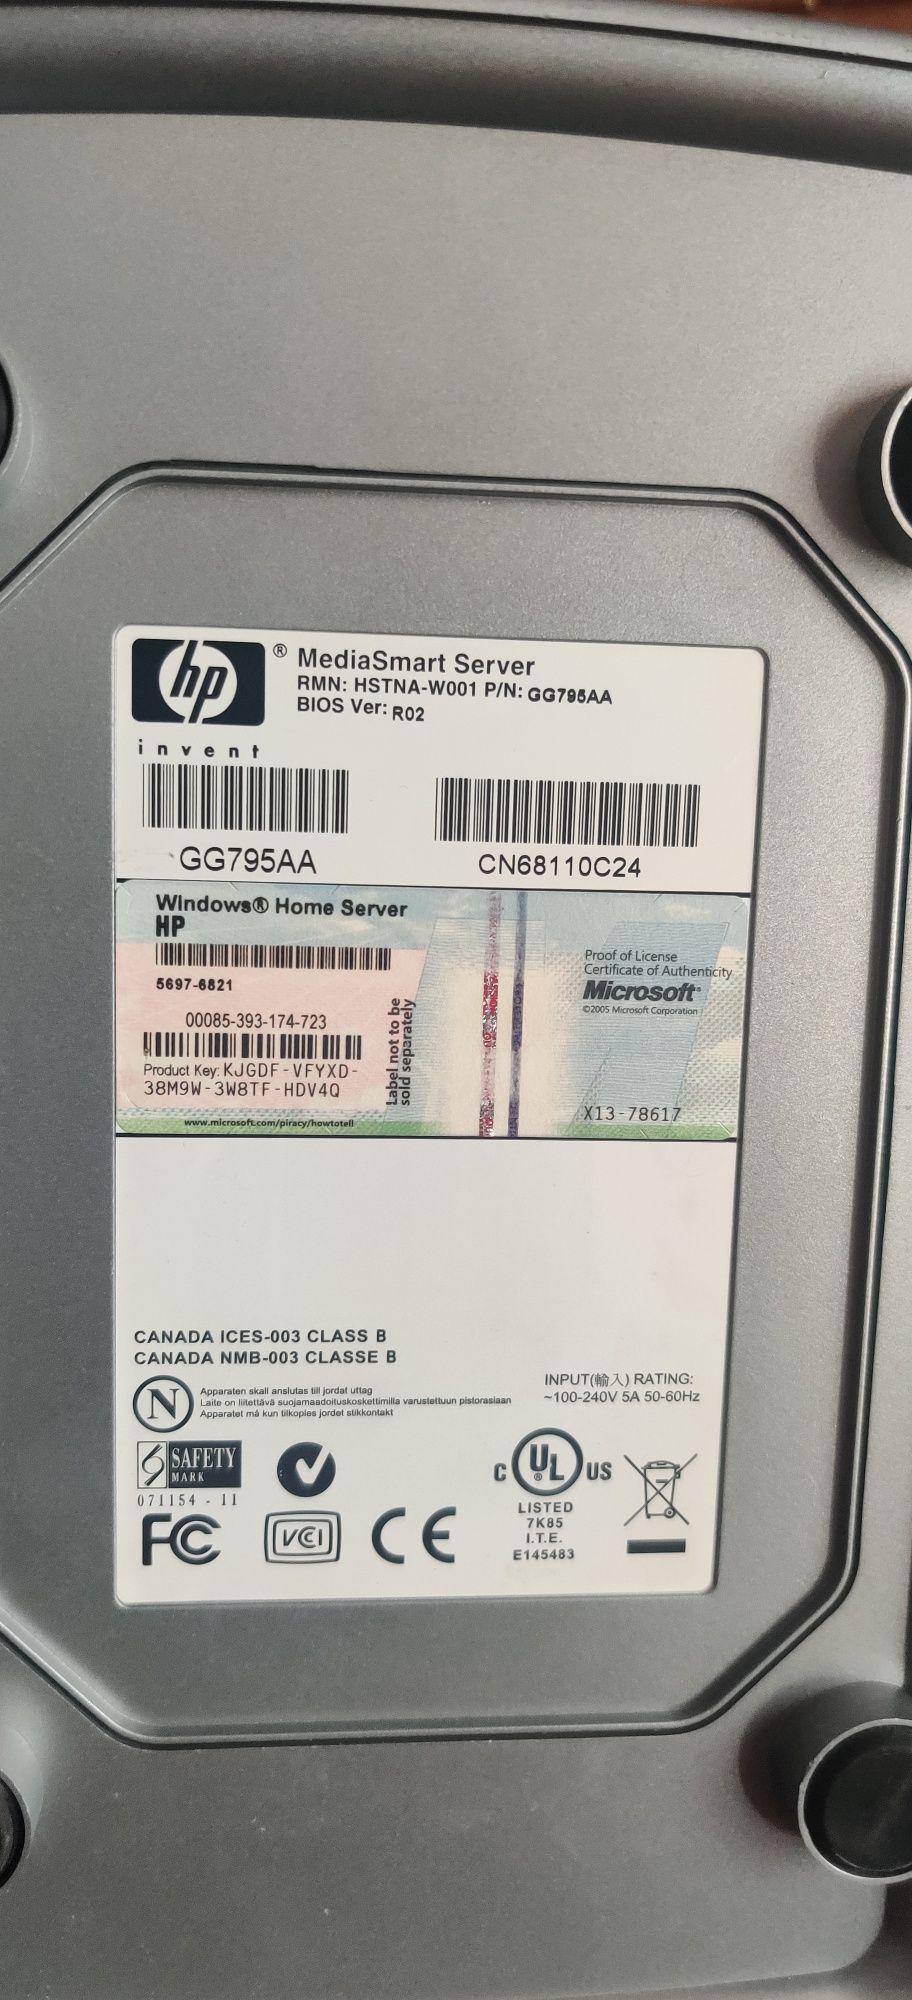 Сервер HP gg795aa  MediaSmart

Сетевое хранилище